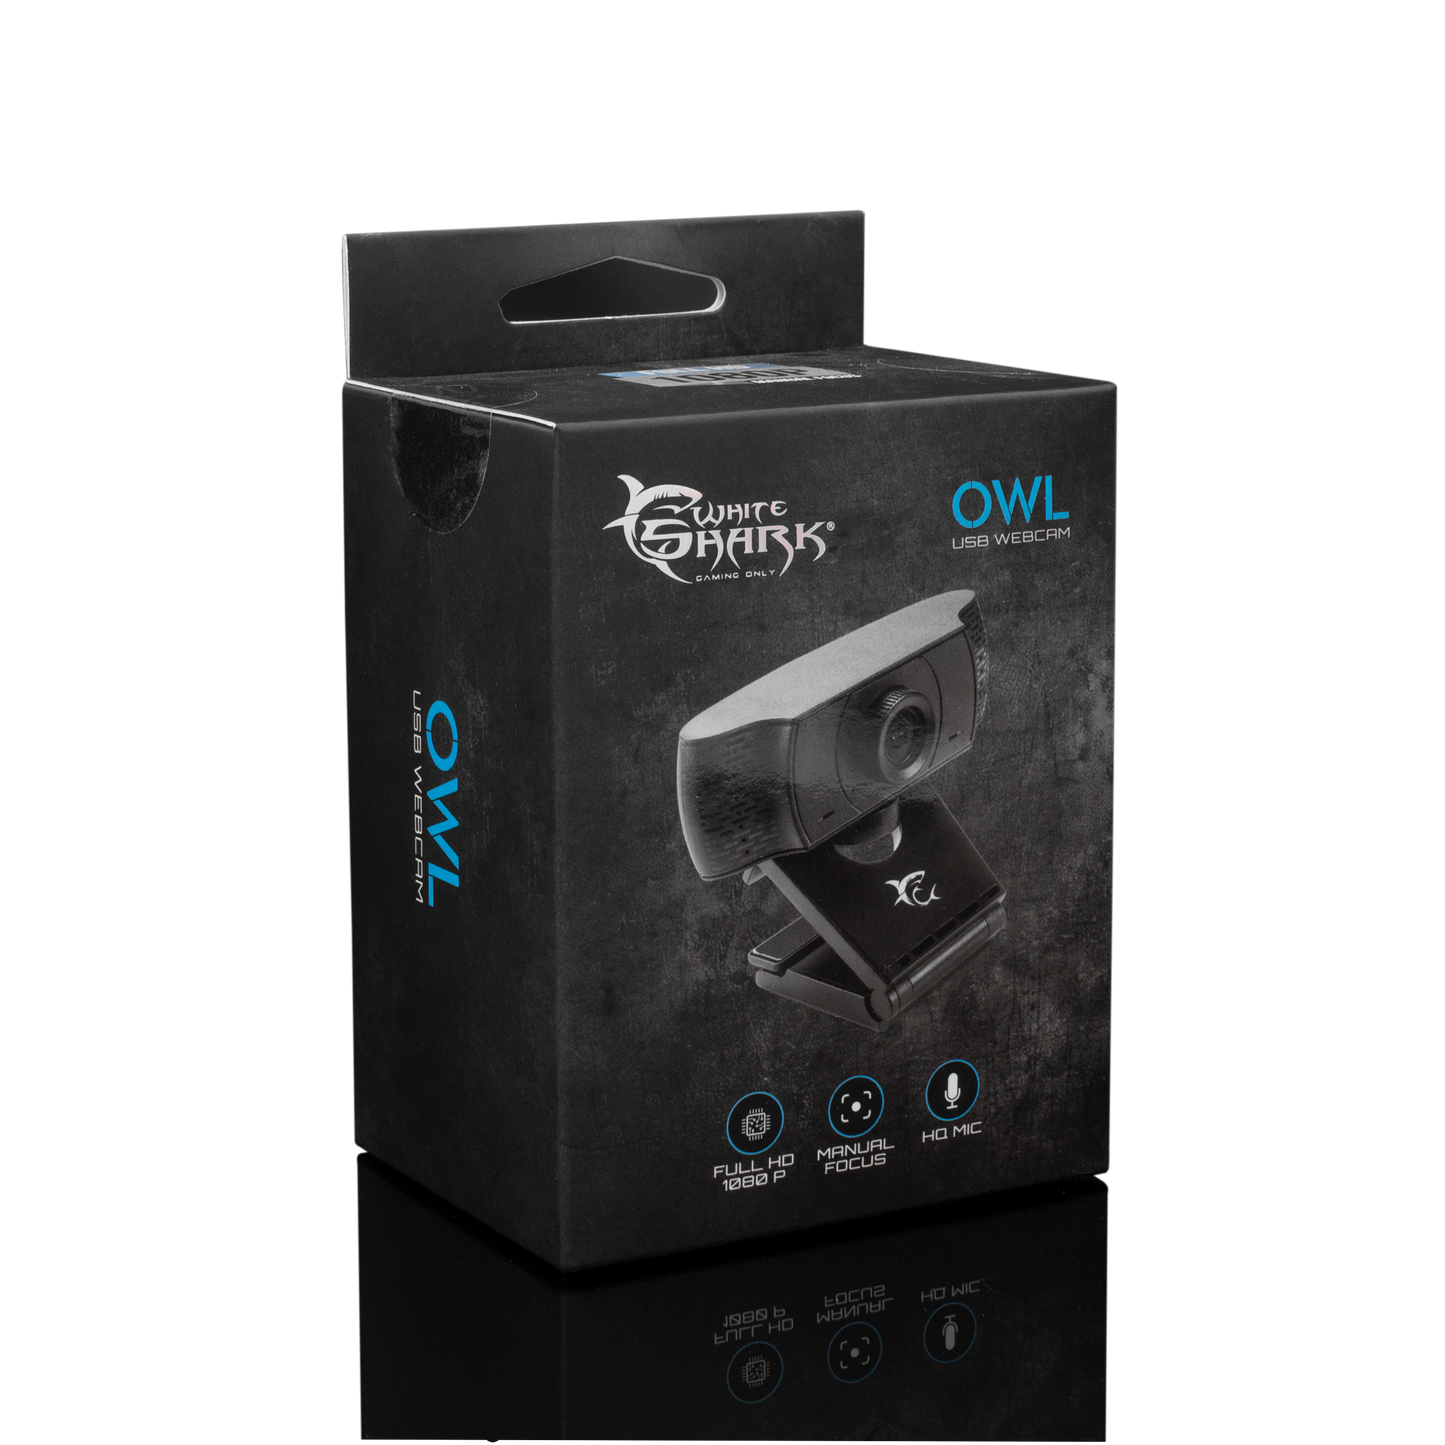 OWL Webcam - The AzTech